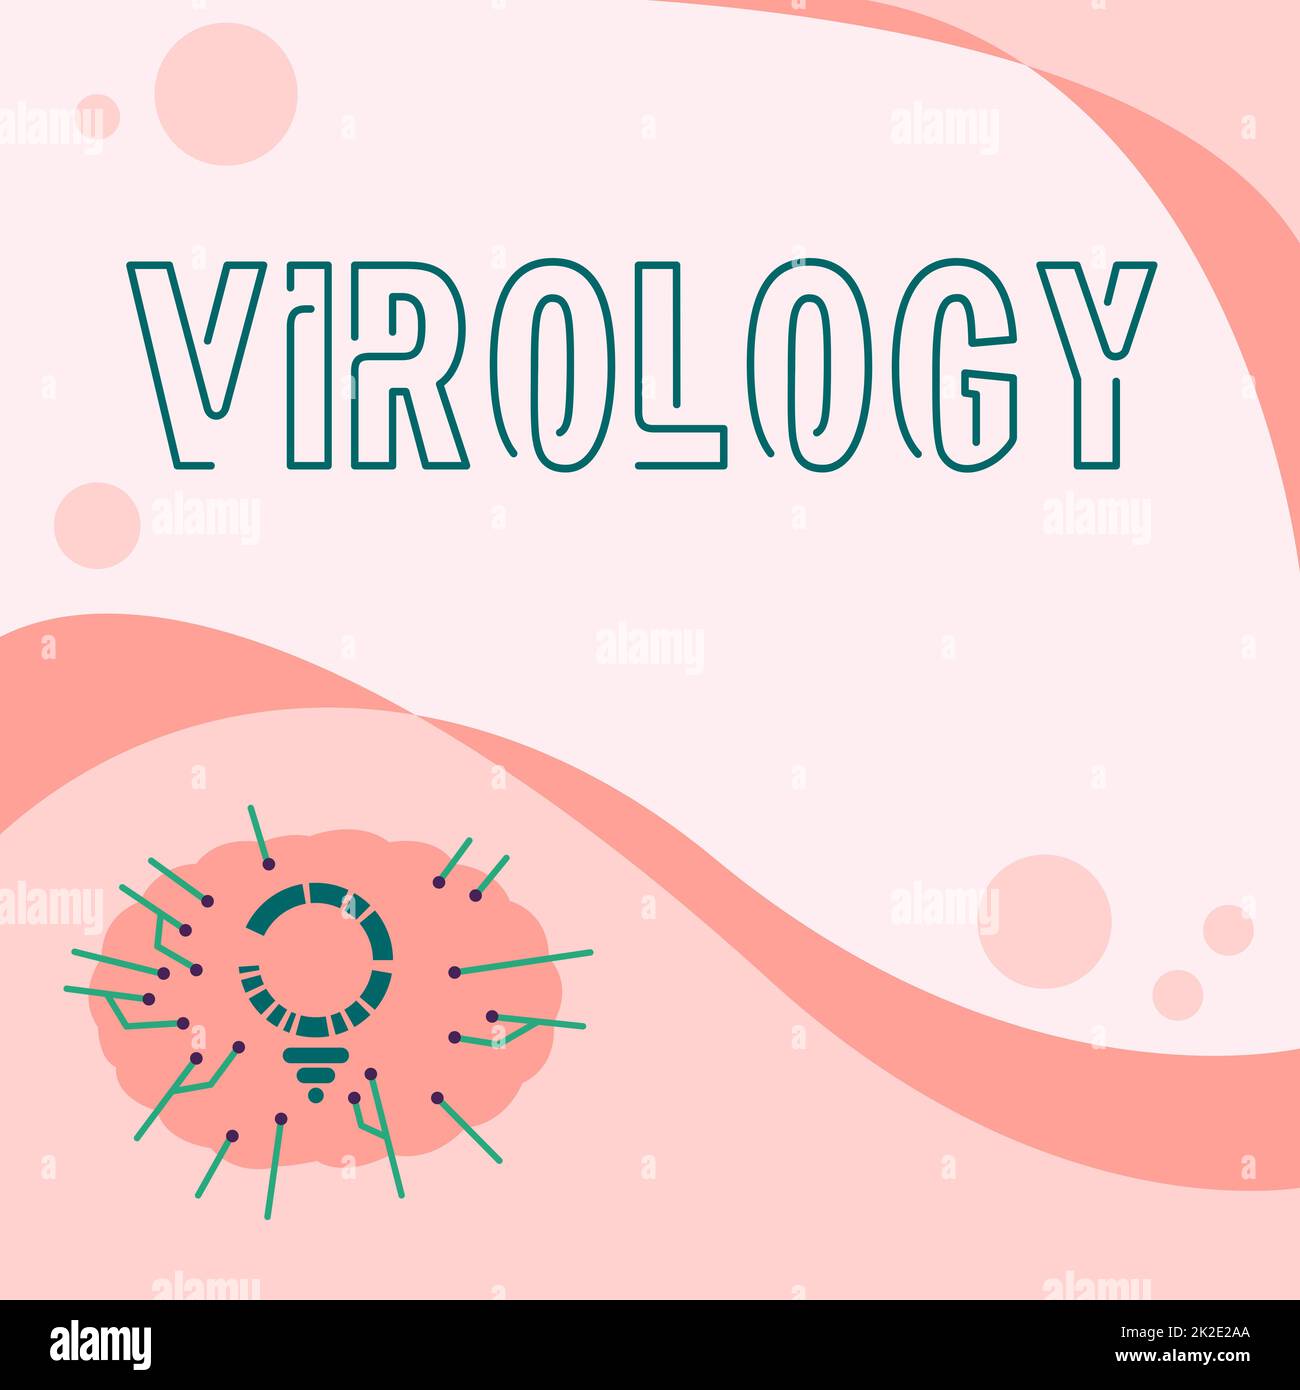 Konzeptionelle Überschrift Virologie. Konzeptfoto Virologie-Glühlampe Zeichnung mit mehreren Zeilen neben leerem Schreibraum. Stockfoto